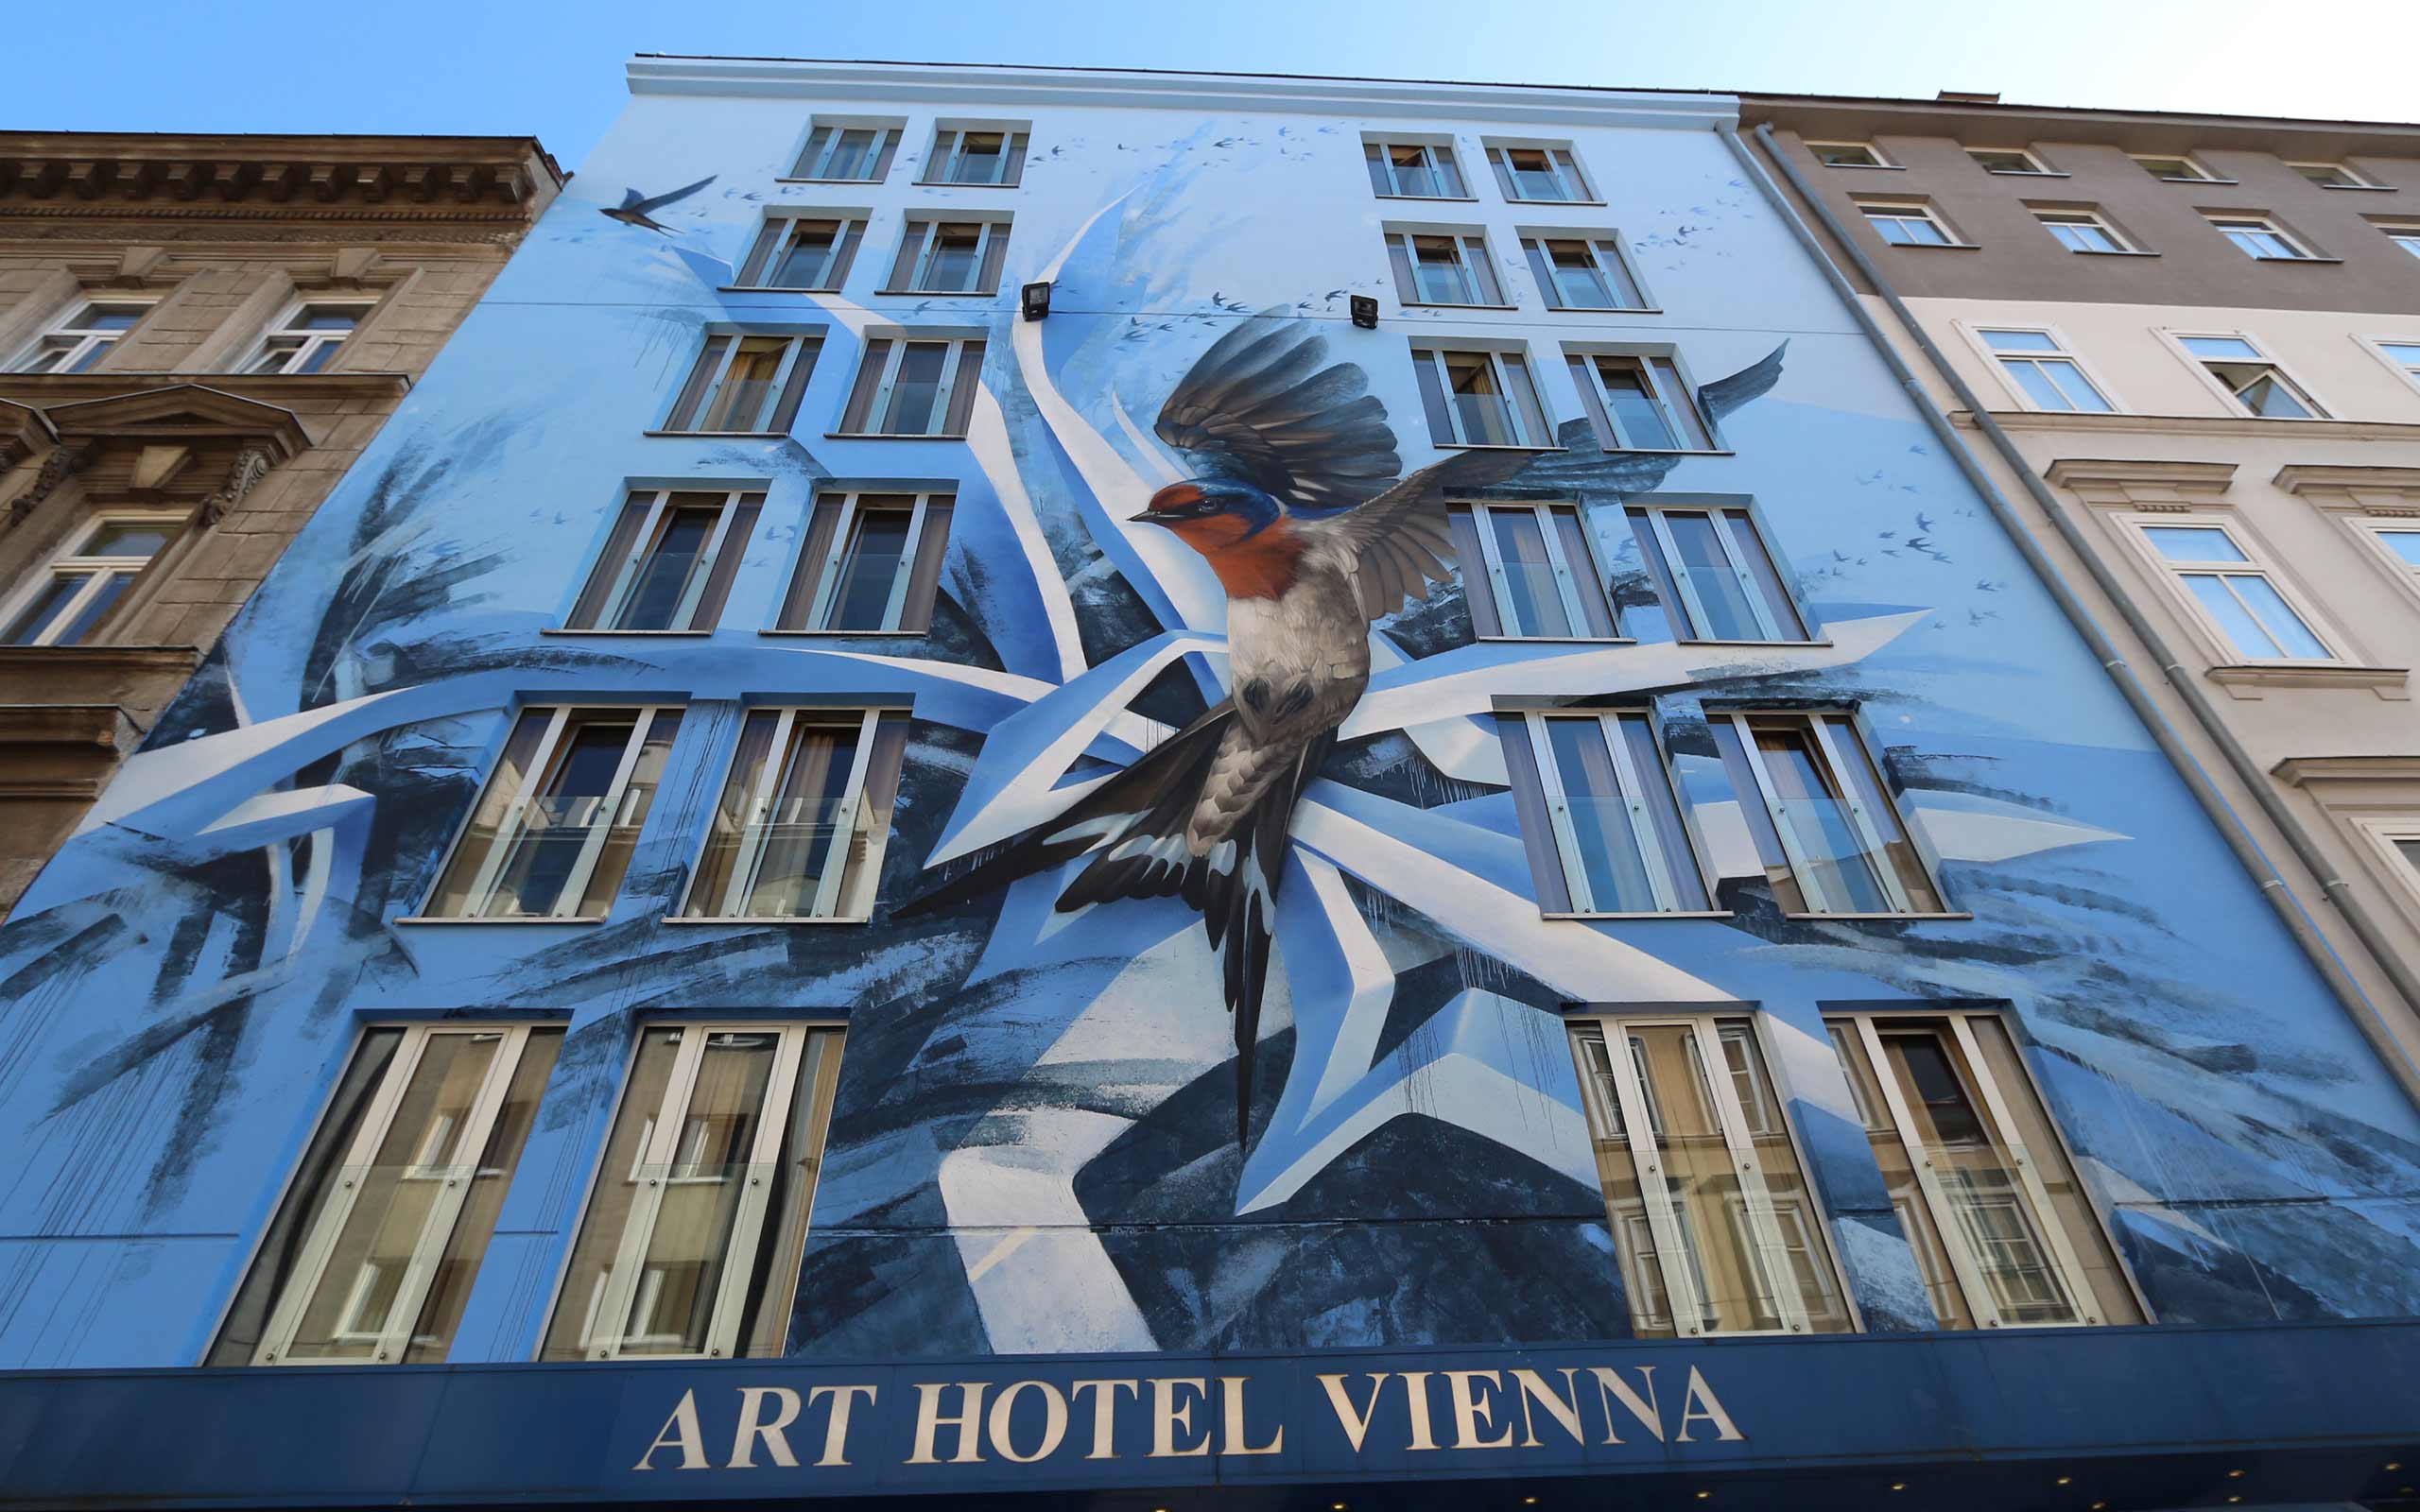 Das Art Hotel Vienna der 3SI Immogroup bekam eine kunstvolle Graffiti-Fassade